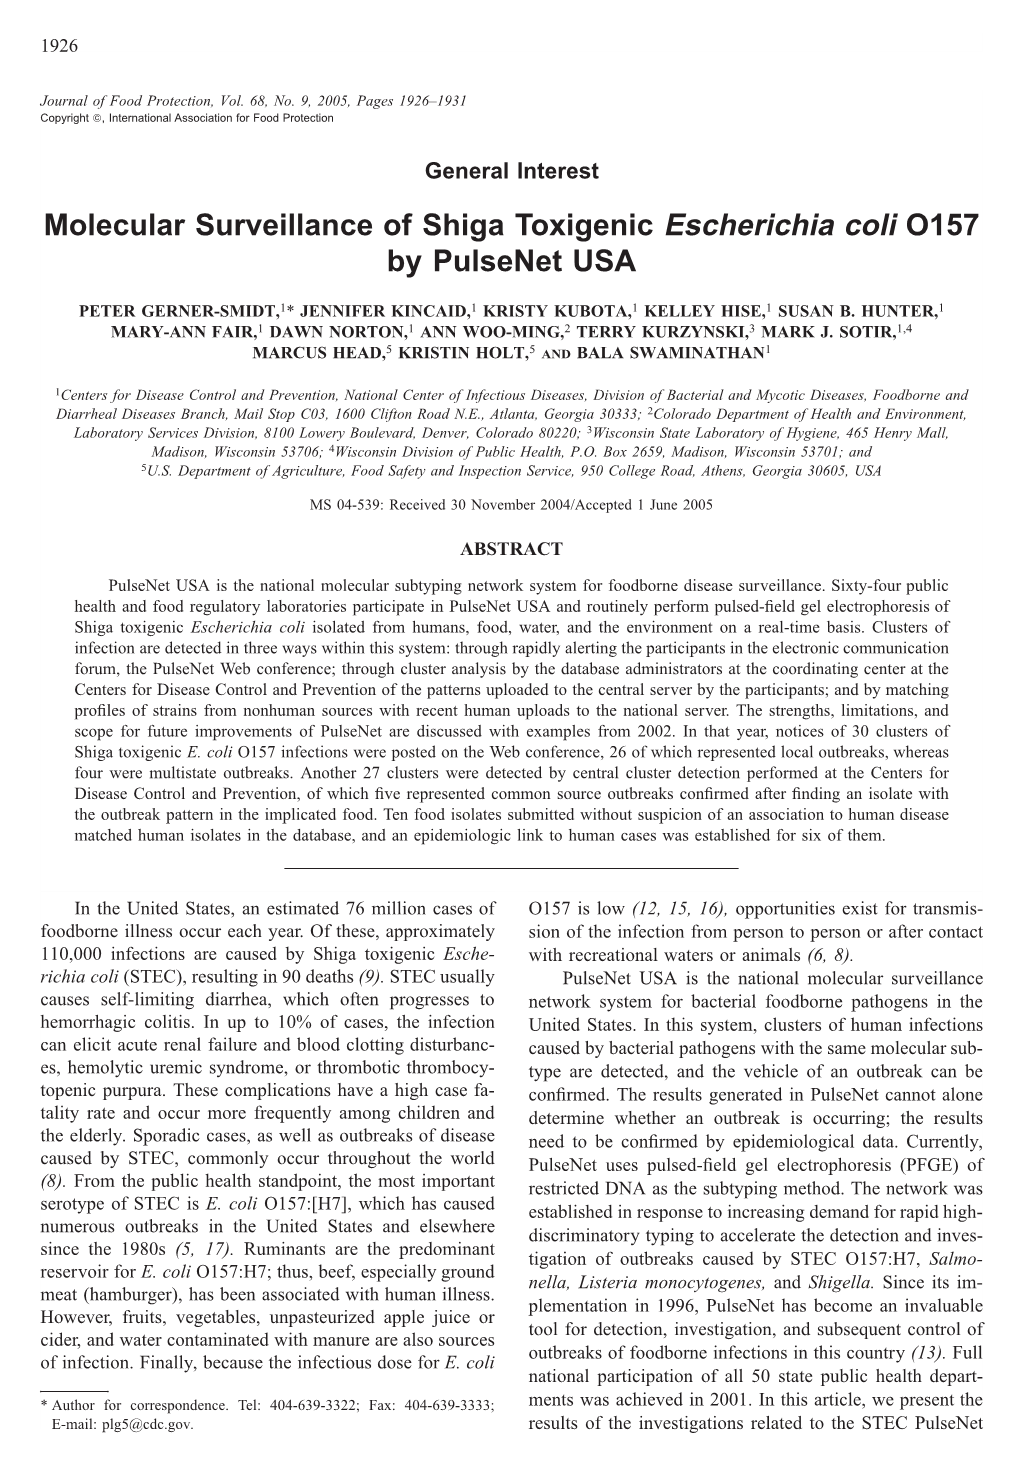 Molecular Surveillance of Shiga Toxigenic Escherichia Coli O157 by Pulsenet USA